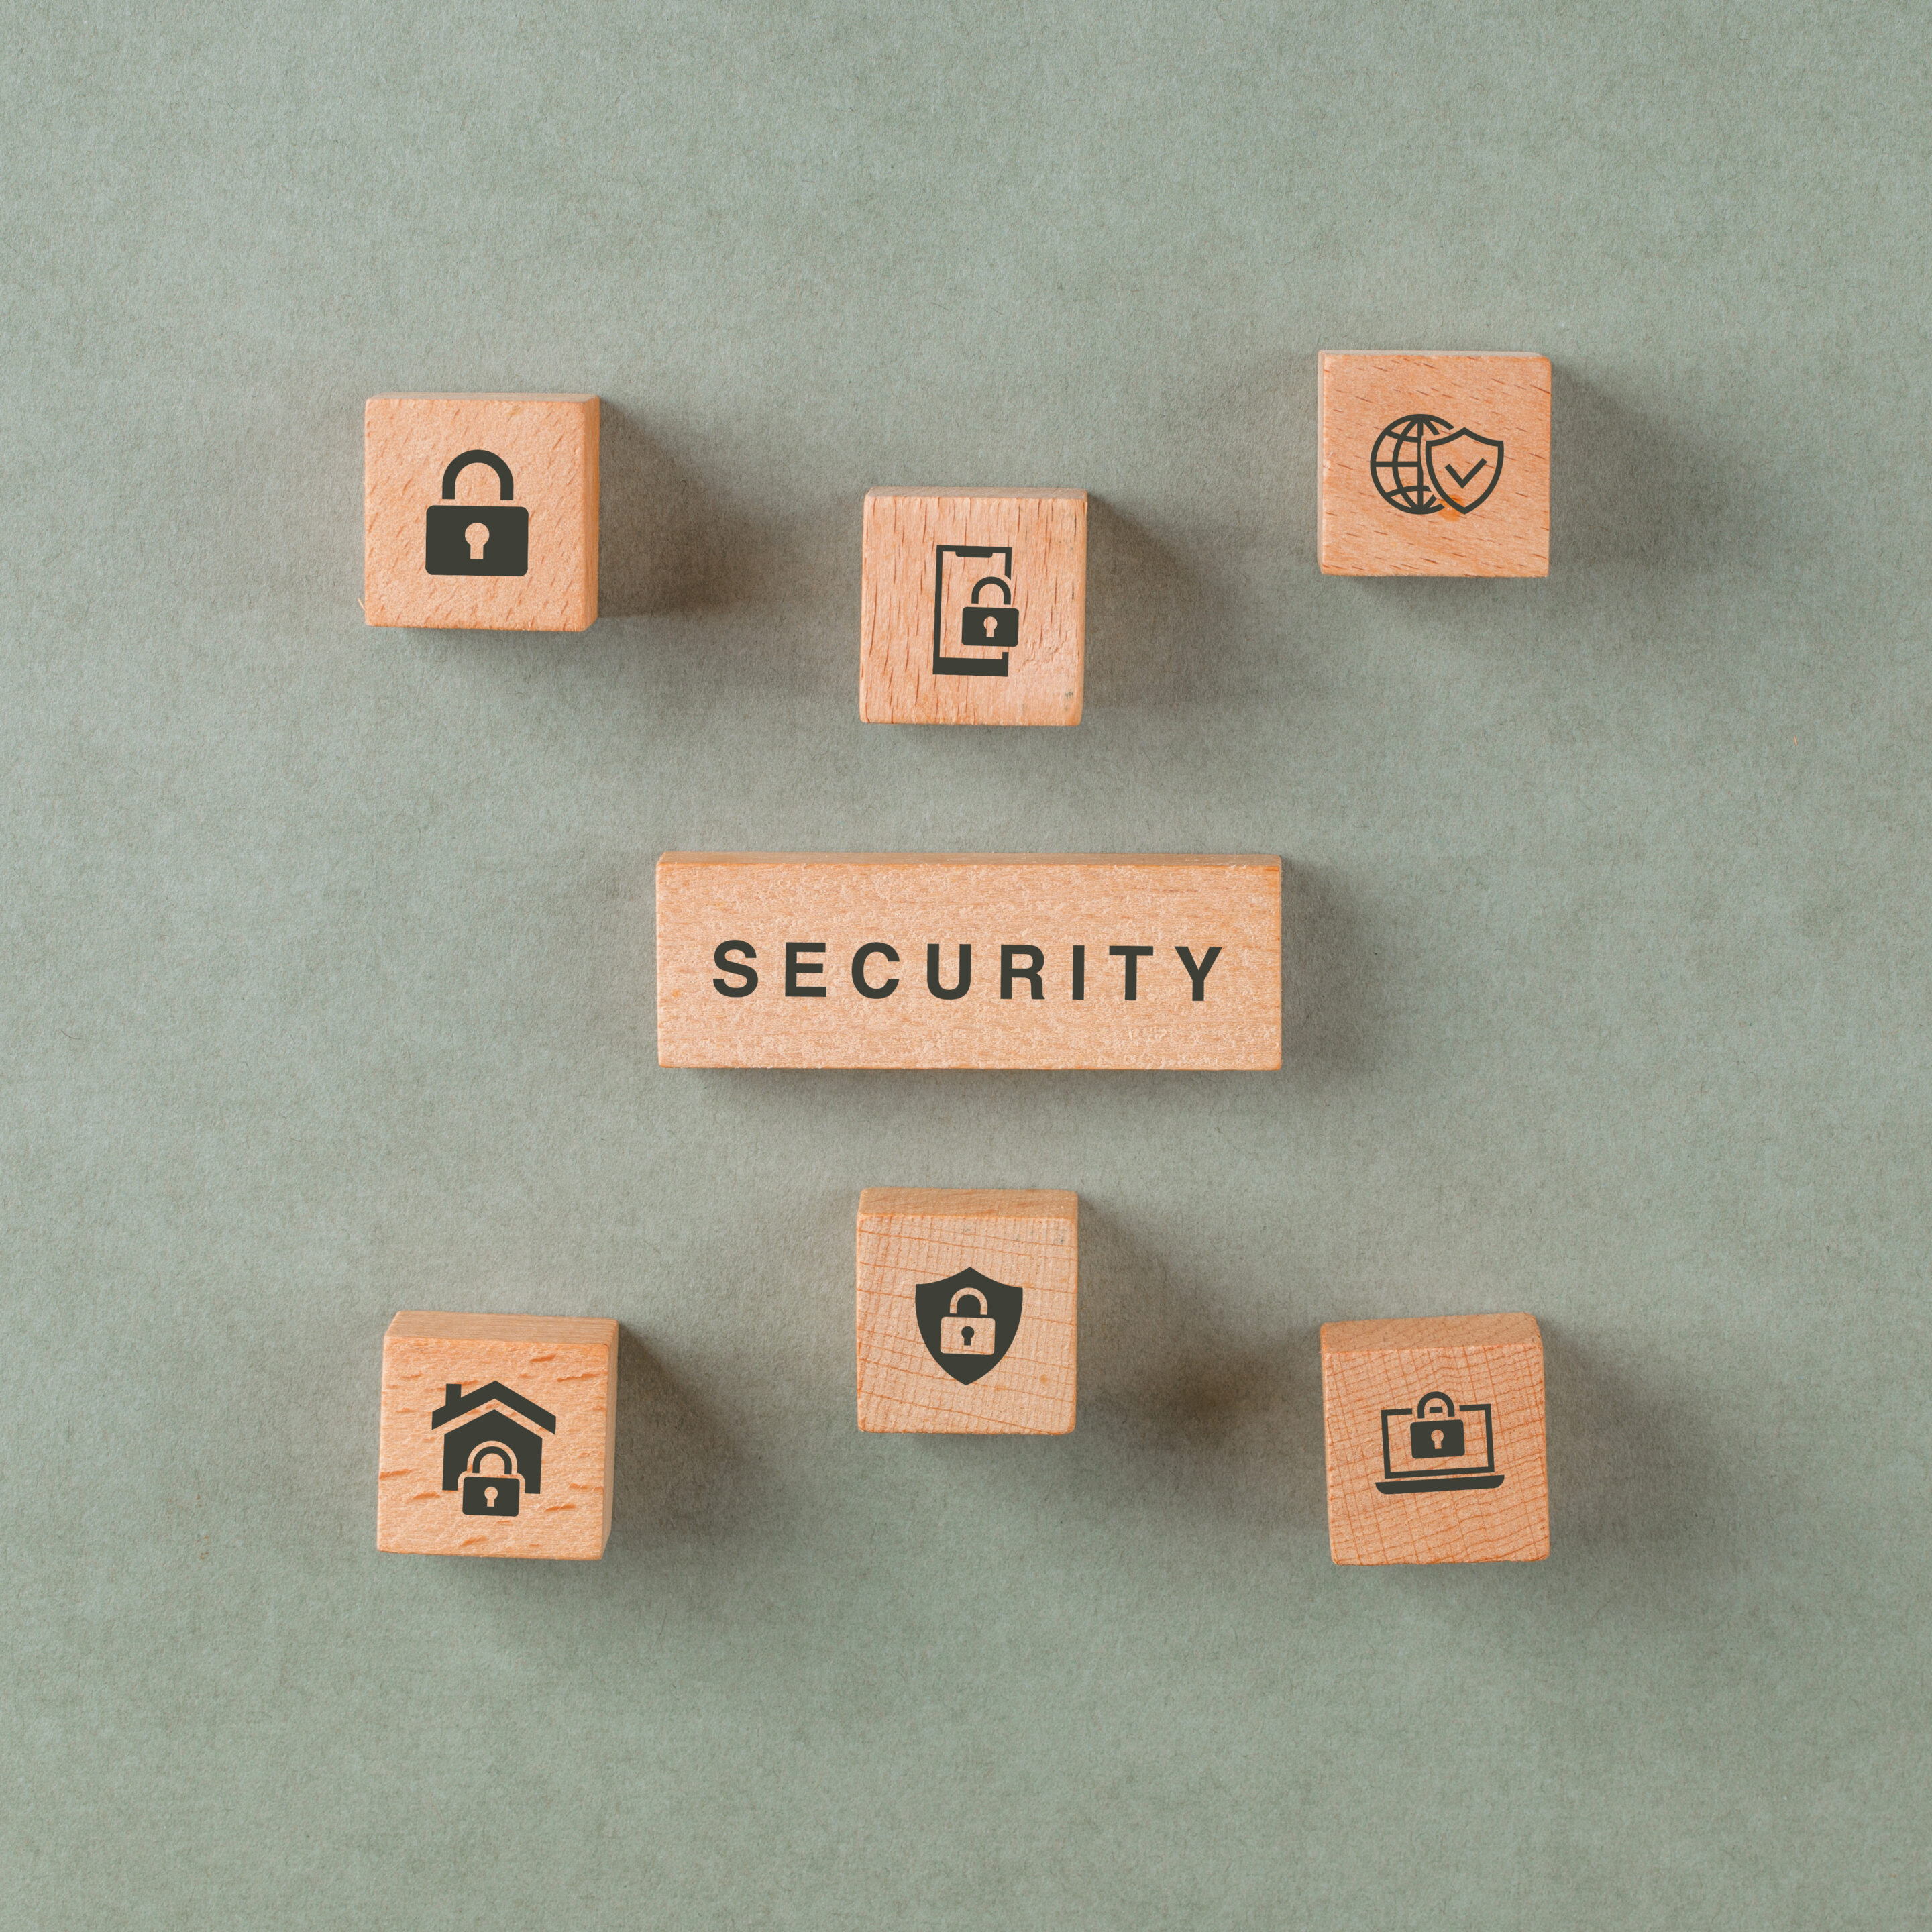 Protecting sensitive data
 cloud data security